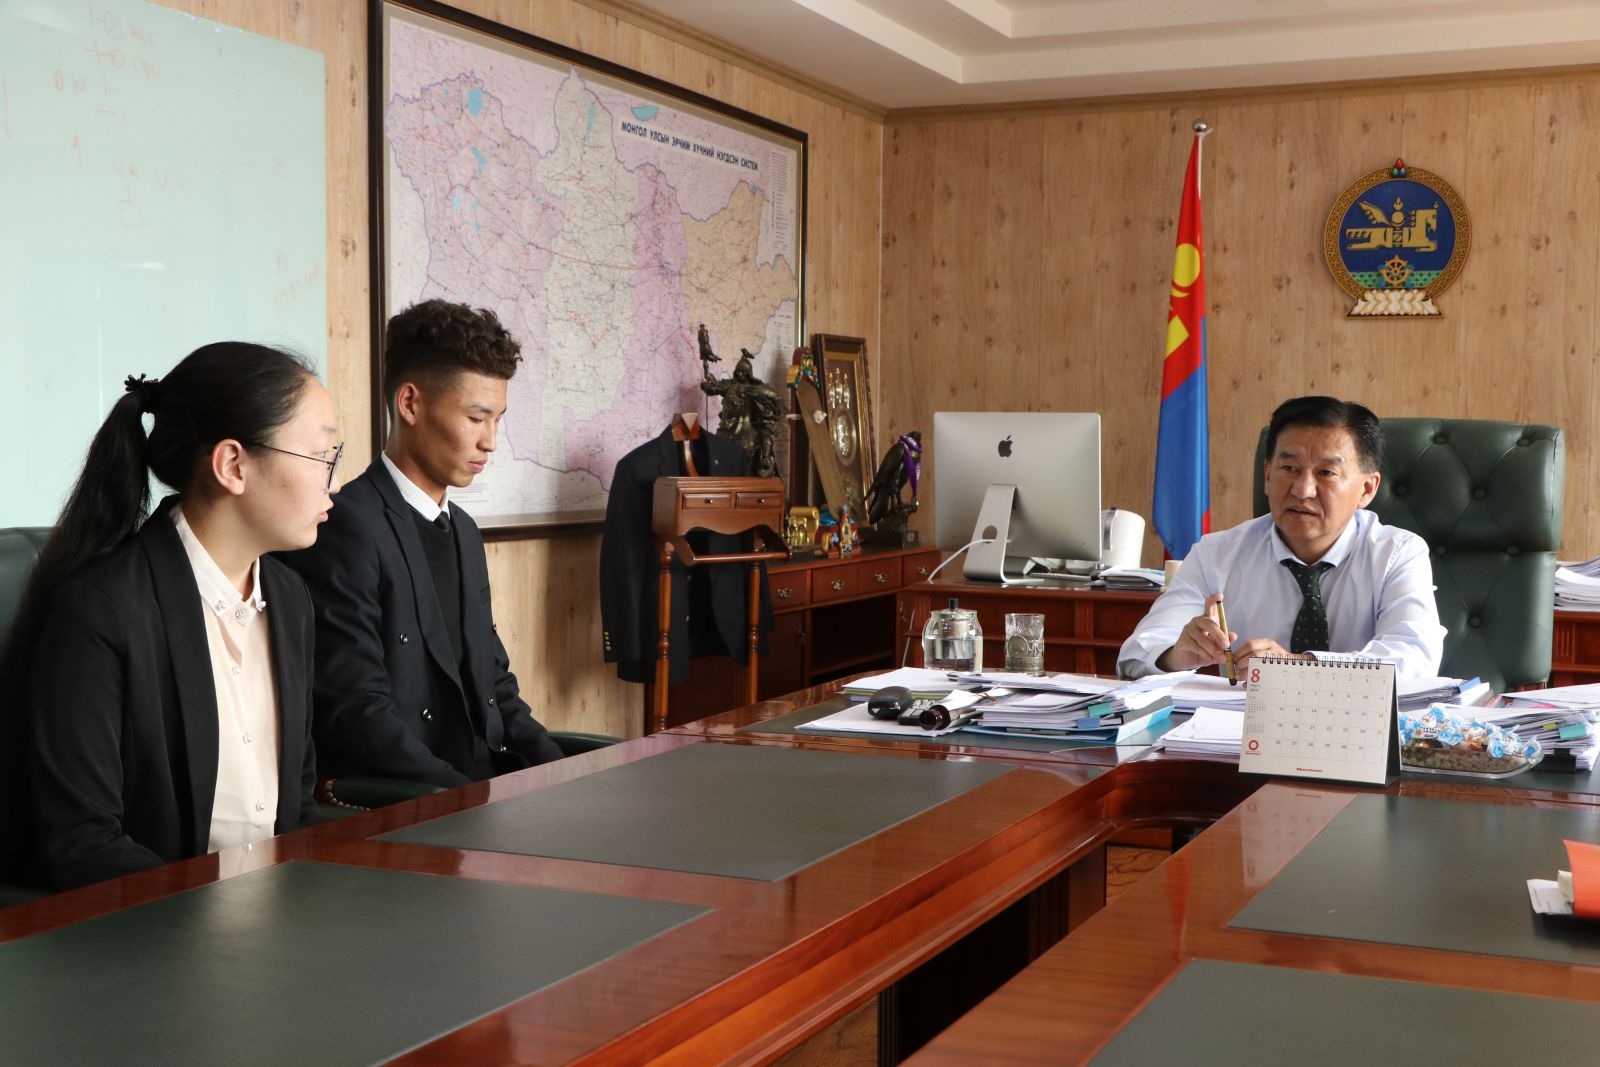 Бүгд Найрамдах Азербайжан Улсын Газрын тос, үйлдвэрлэлийн их сургуульд Монгол оюутнууд суралцана